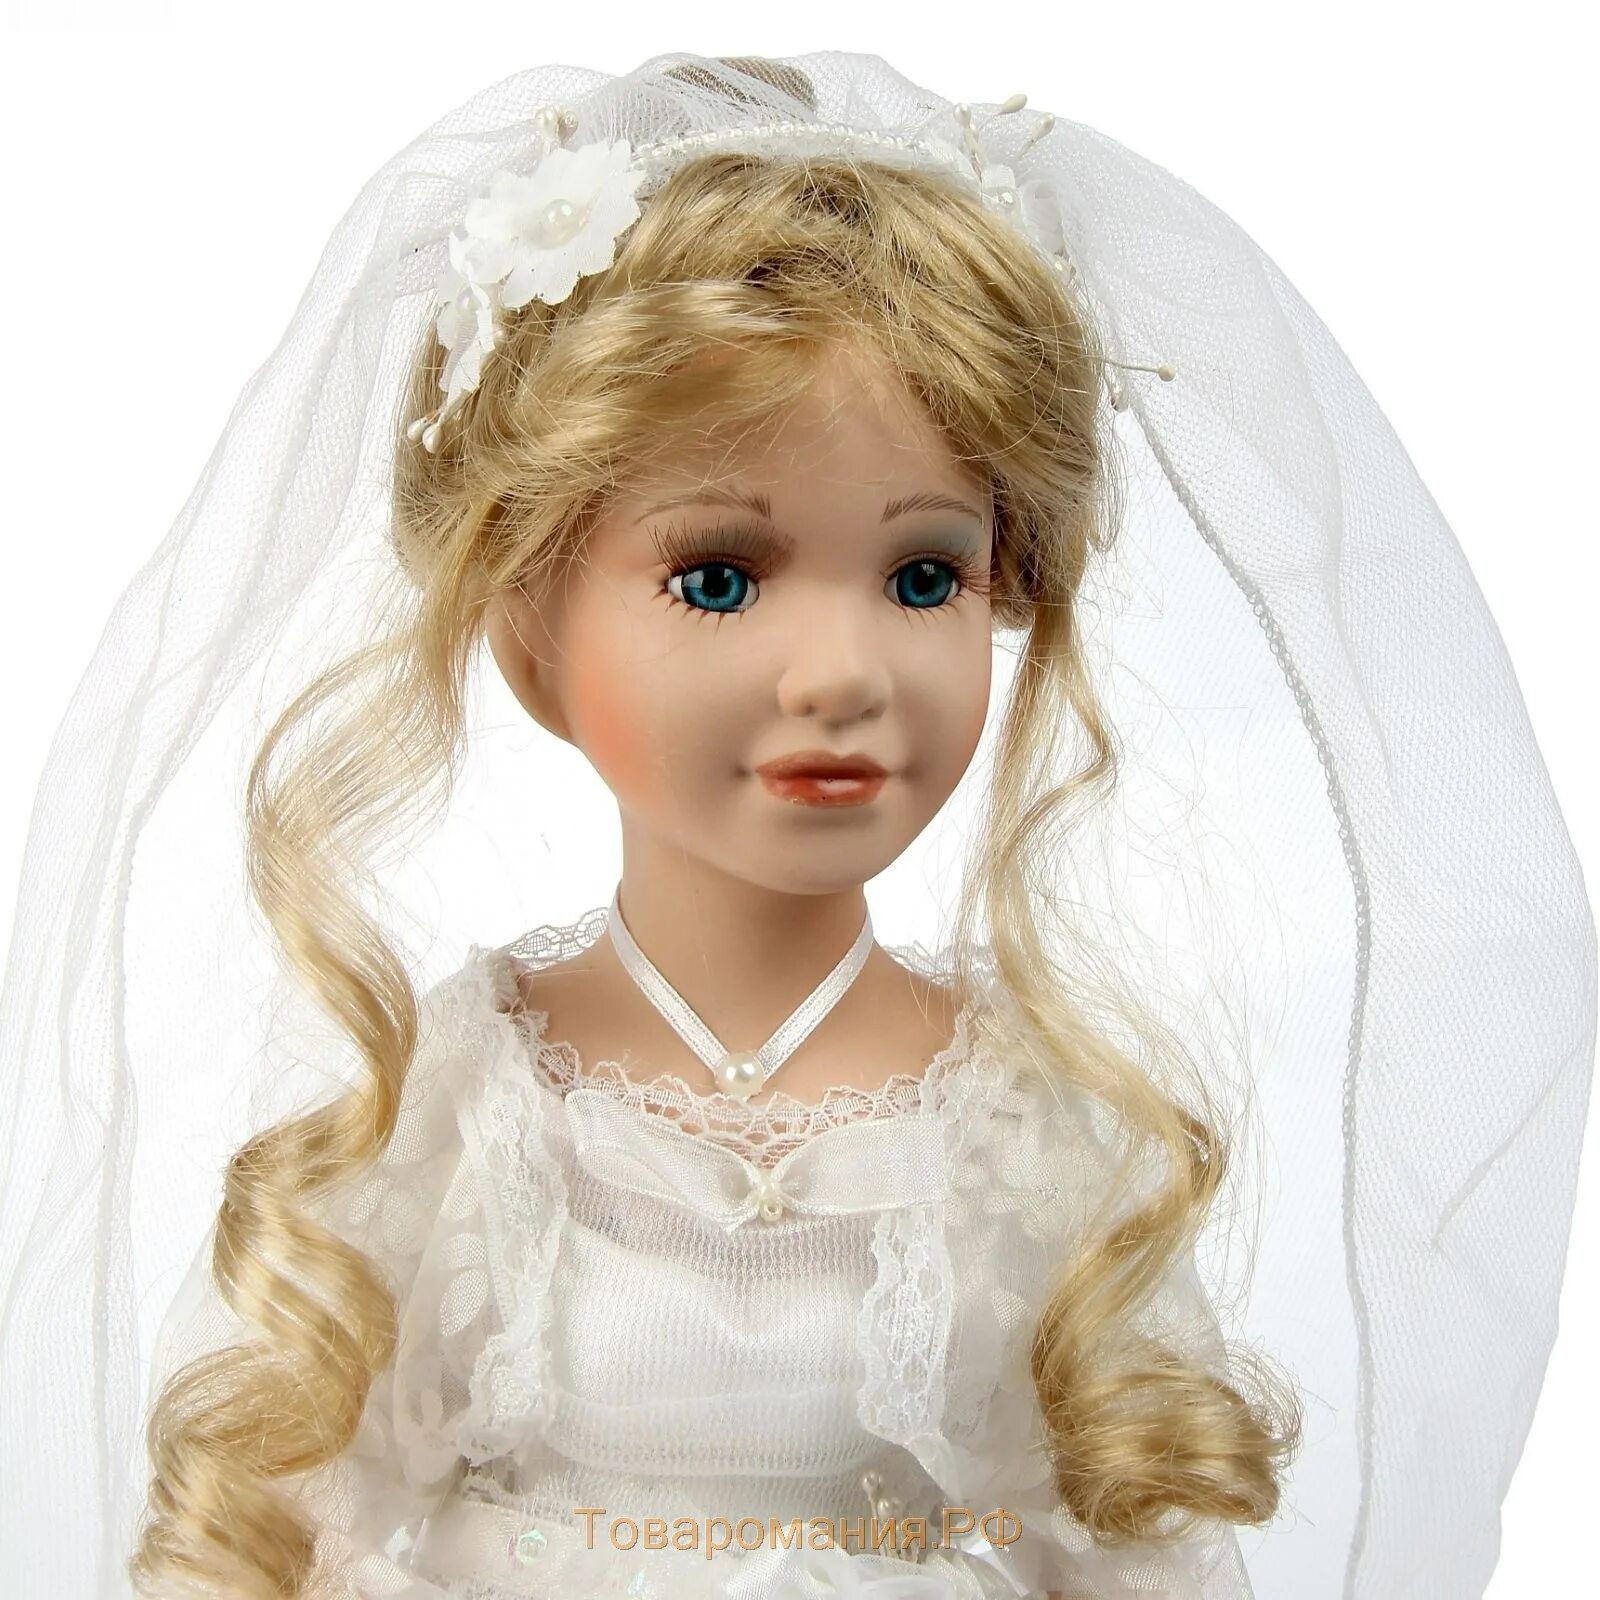 Купить куклу невесту. Фарфоровая кукла невеста. Кукла невеста коллекционная. Кукла коллекционная невеста 2002. Фарфоровая кукла невеста 671802rm 45см.